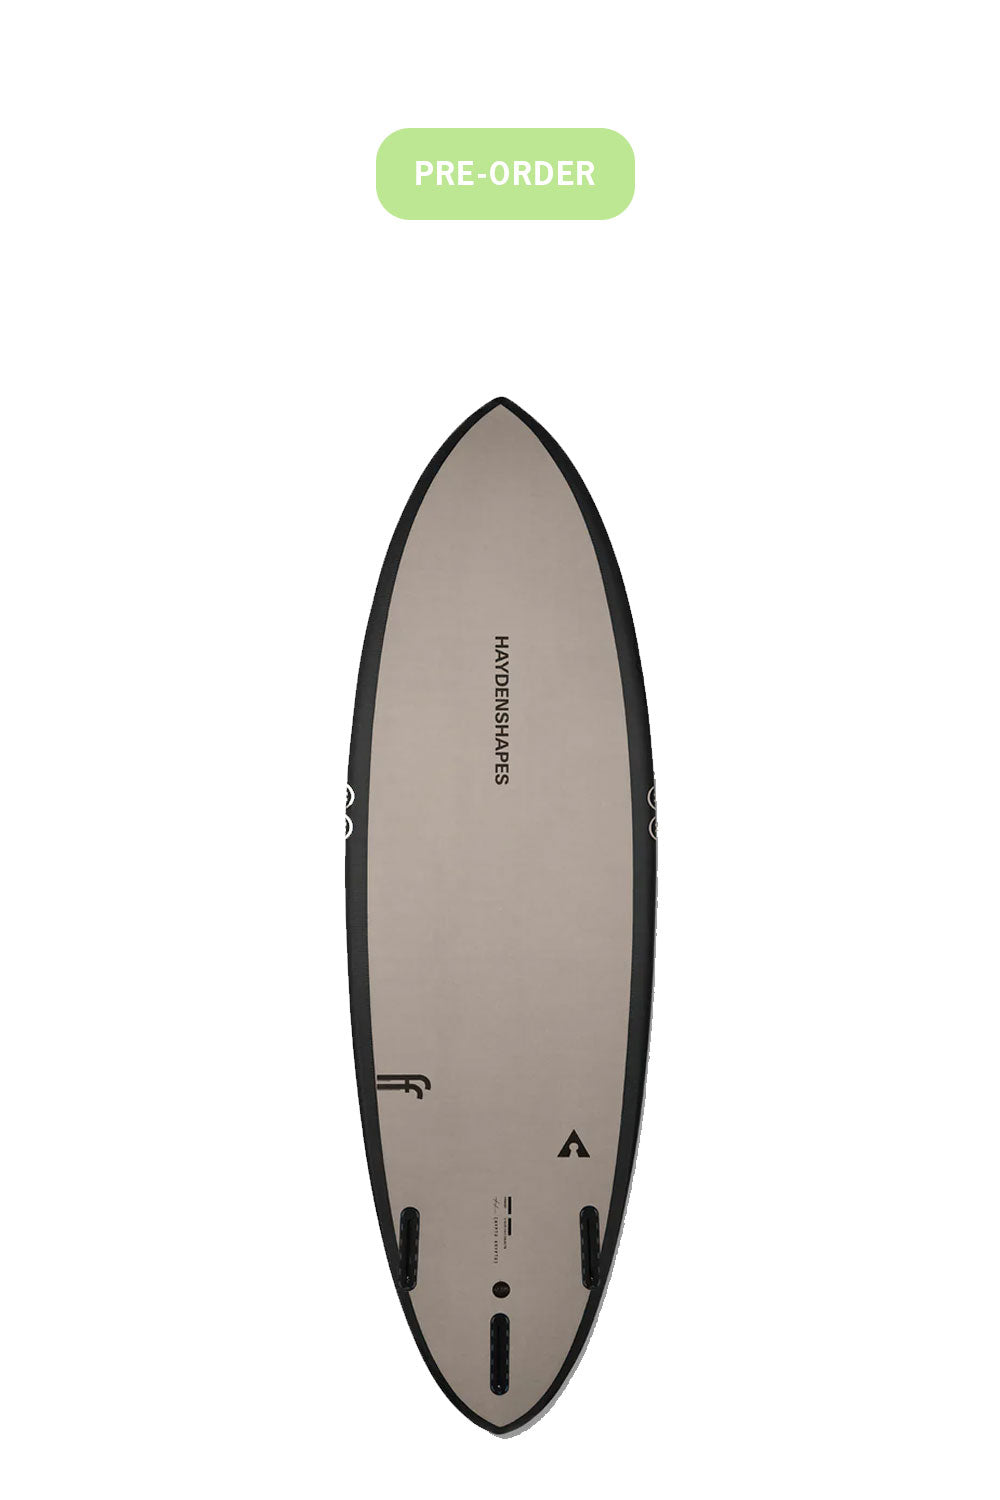 Pukas-Surf-Shop-HaydenShapes-Surfboards-Pre-Order-Sand